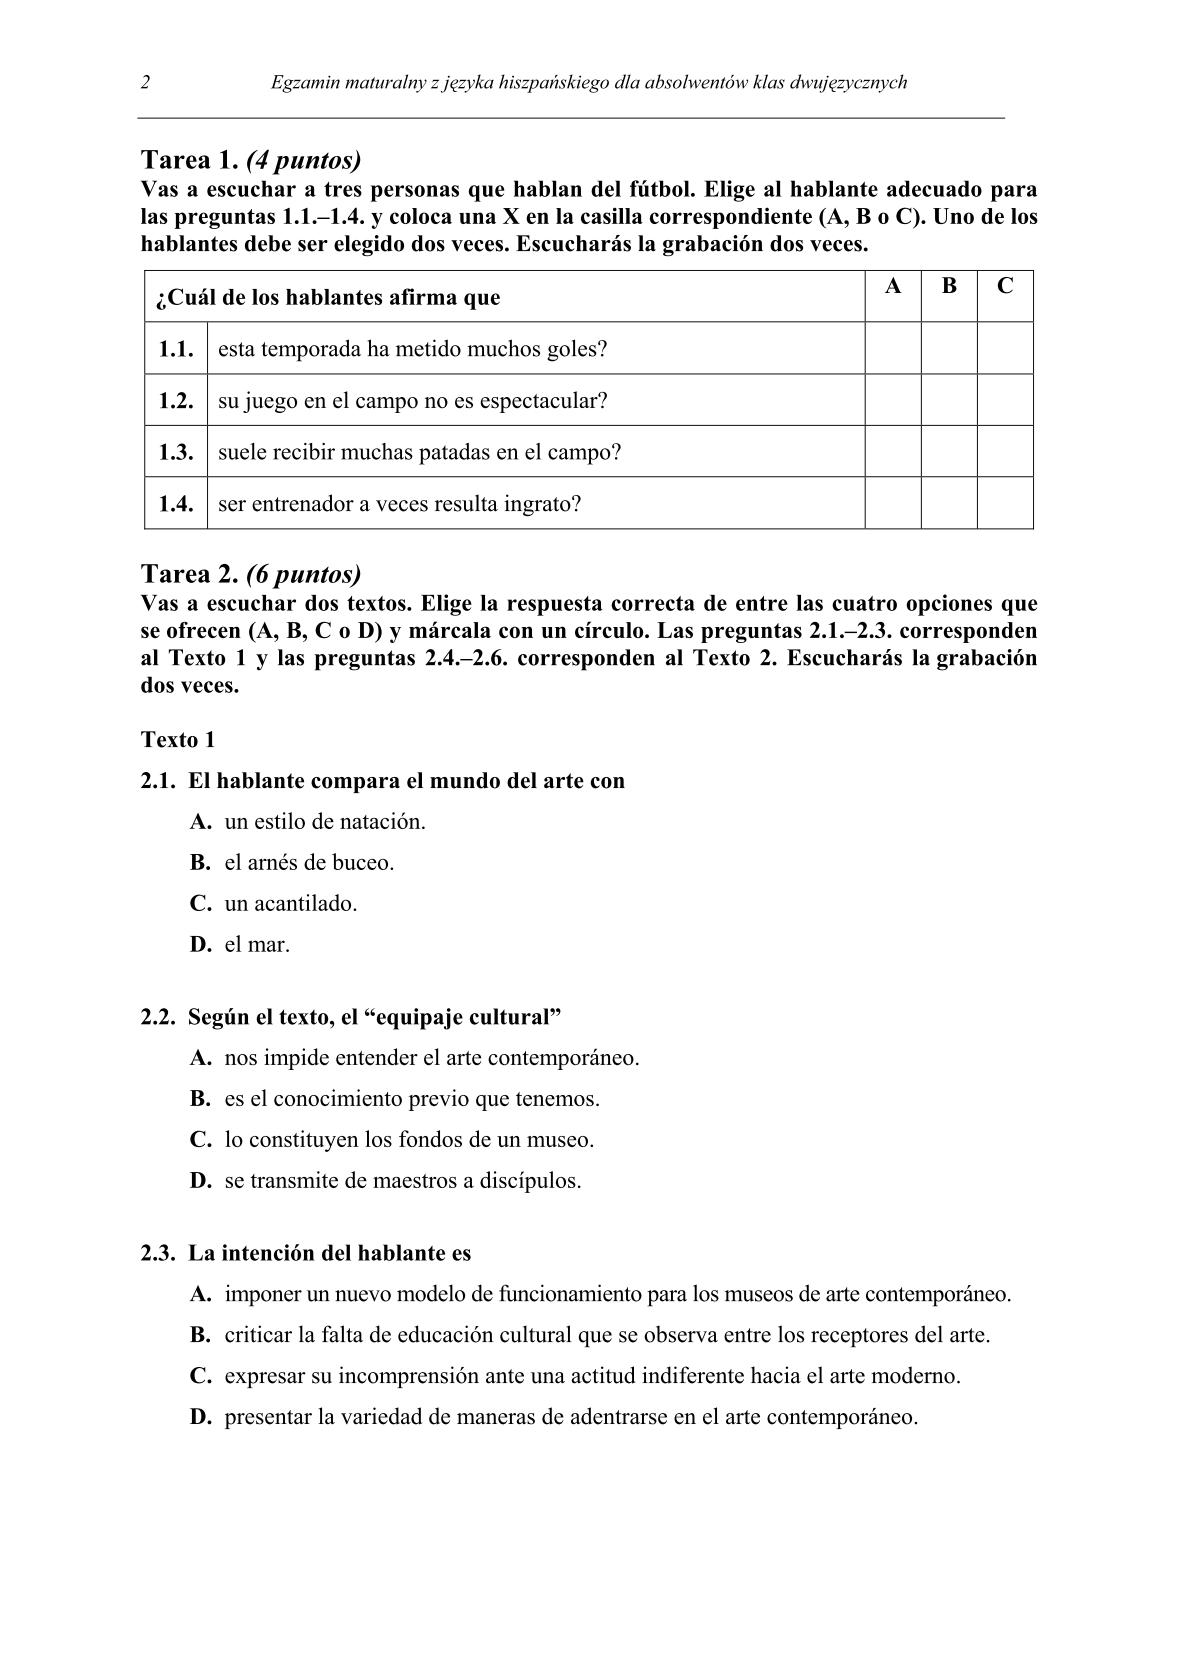 pytania-hiszpanski-dla-absolwentow-klas-dwujezycznych-matura-2014-str.2